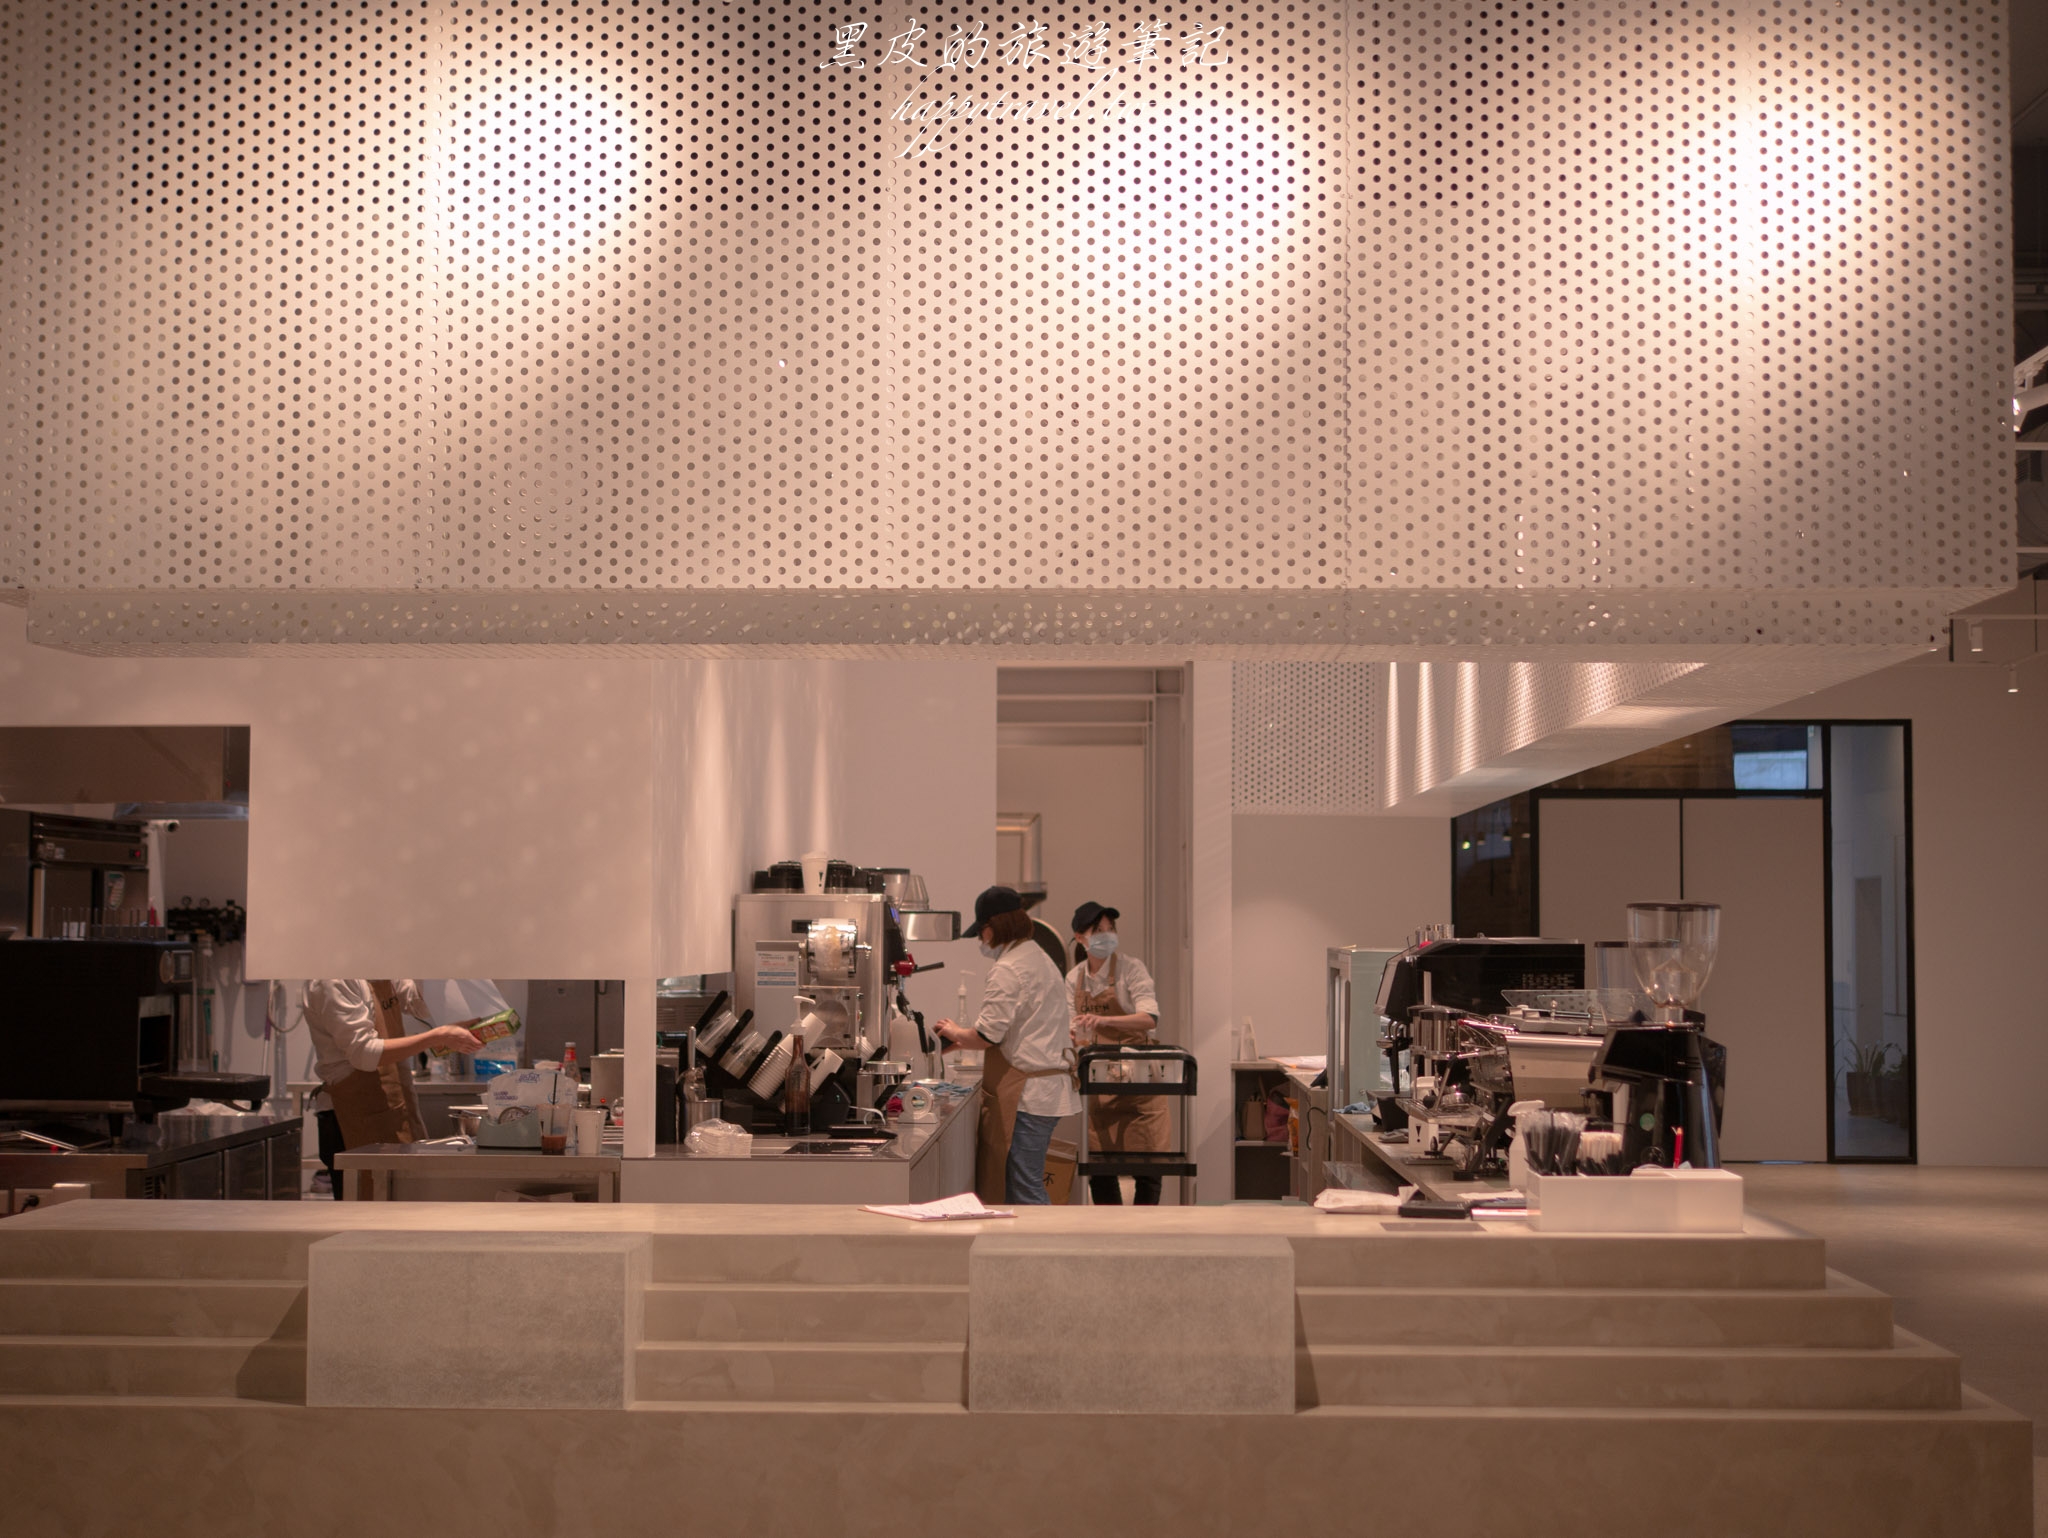 桃園景點。CAFE!N 硬咖啡｜超韓系純白工業風咖啡廳，夢幻純白少女咖啡廳